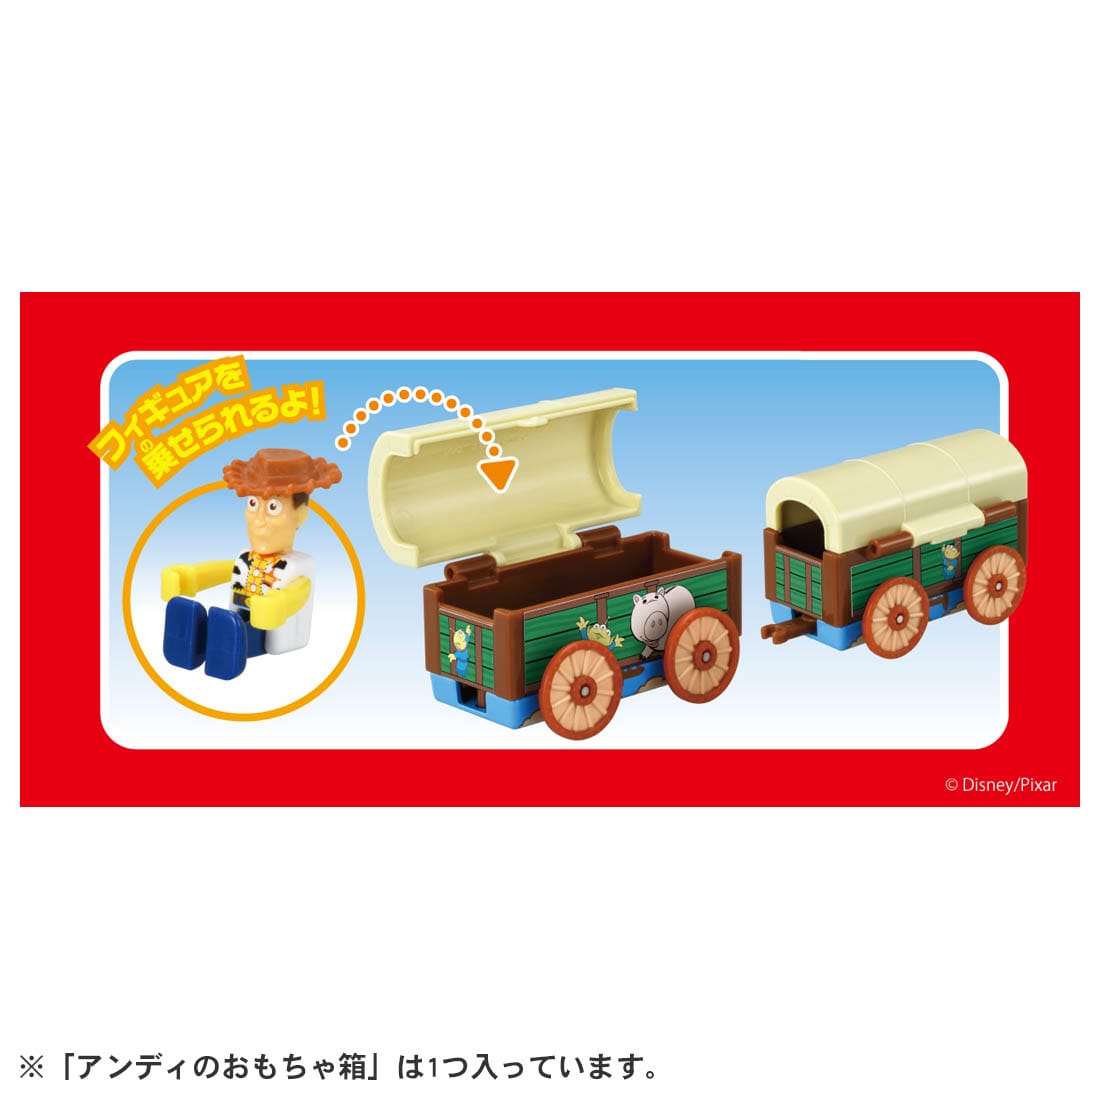 TOMICA 多美迪士尼小汽車 R-DS05 胡迪玩具箱